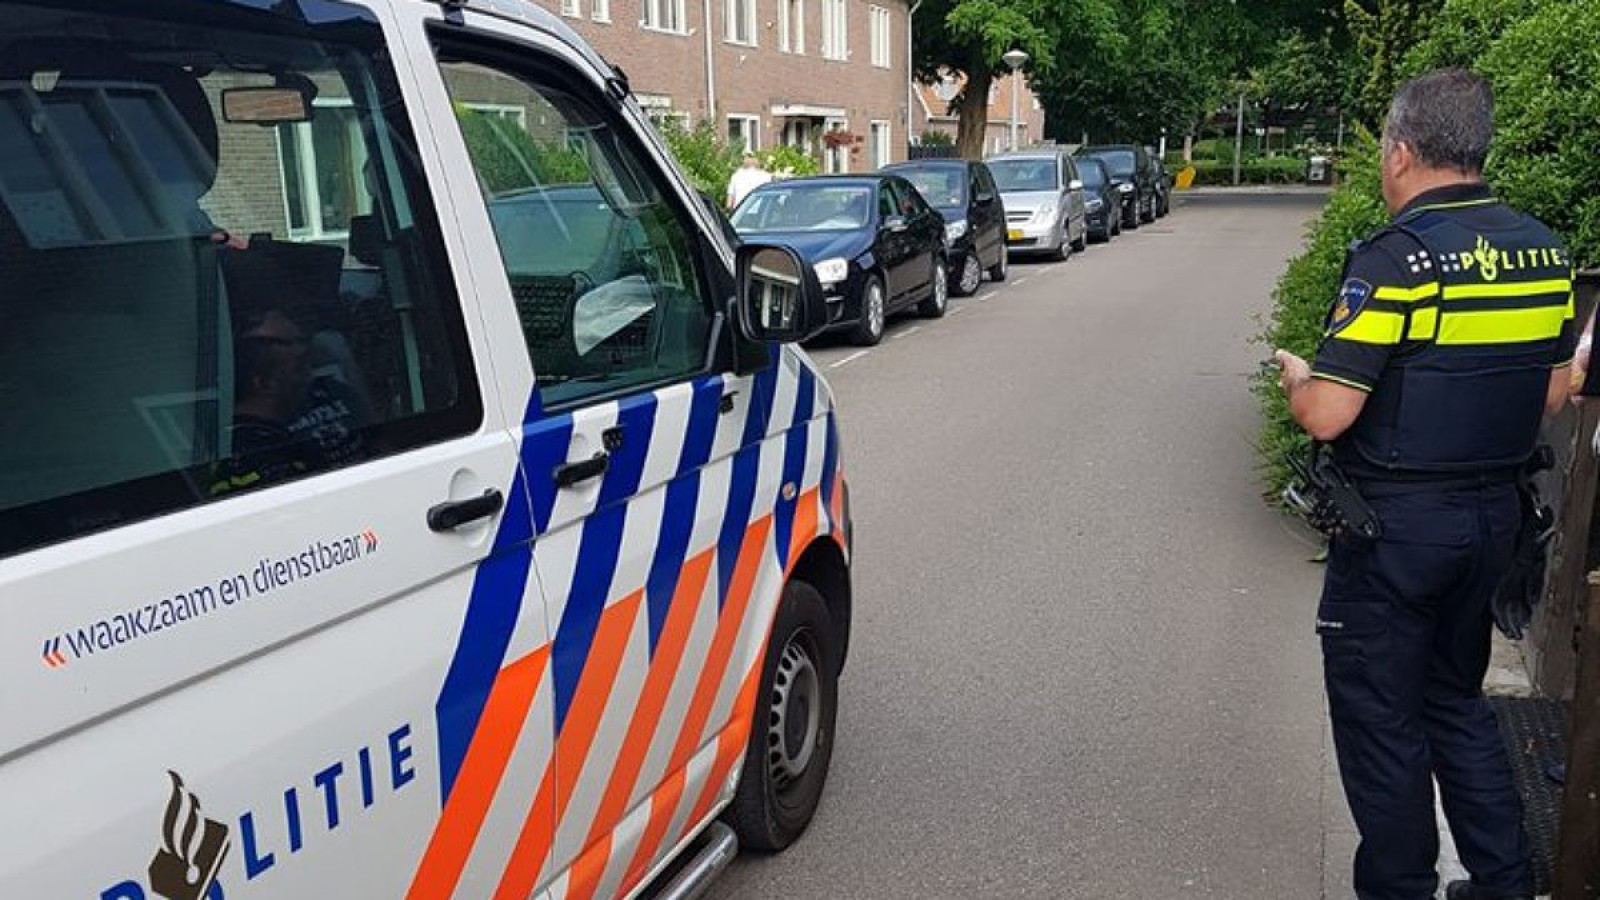 Facebookgebruikers Laten Agenten Boetes Schrijven In Amsterdam Noord Nh Nieuws